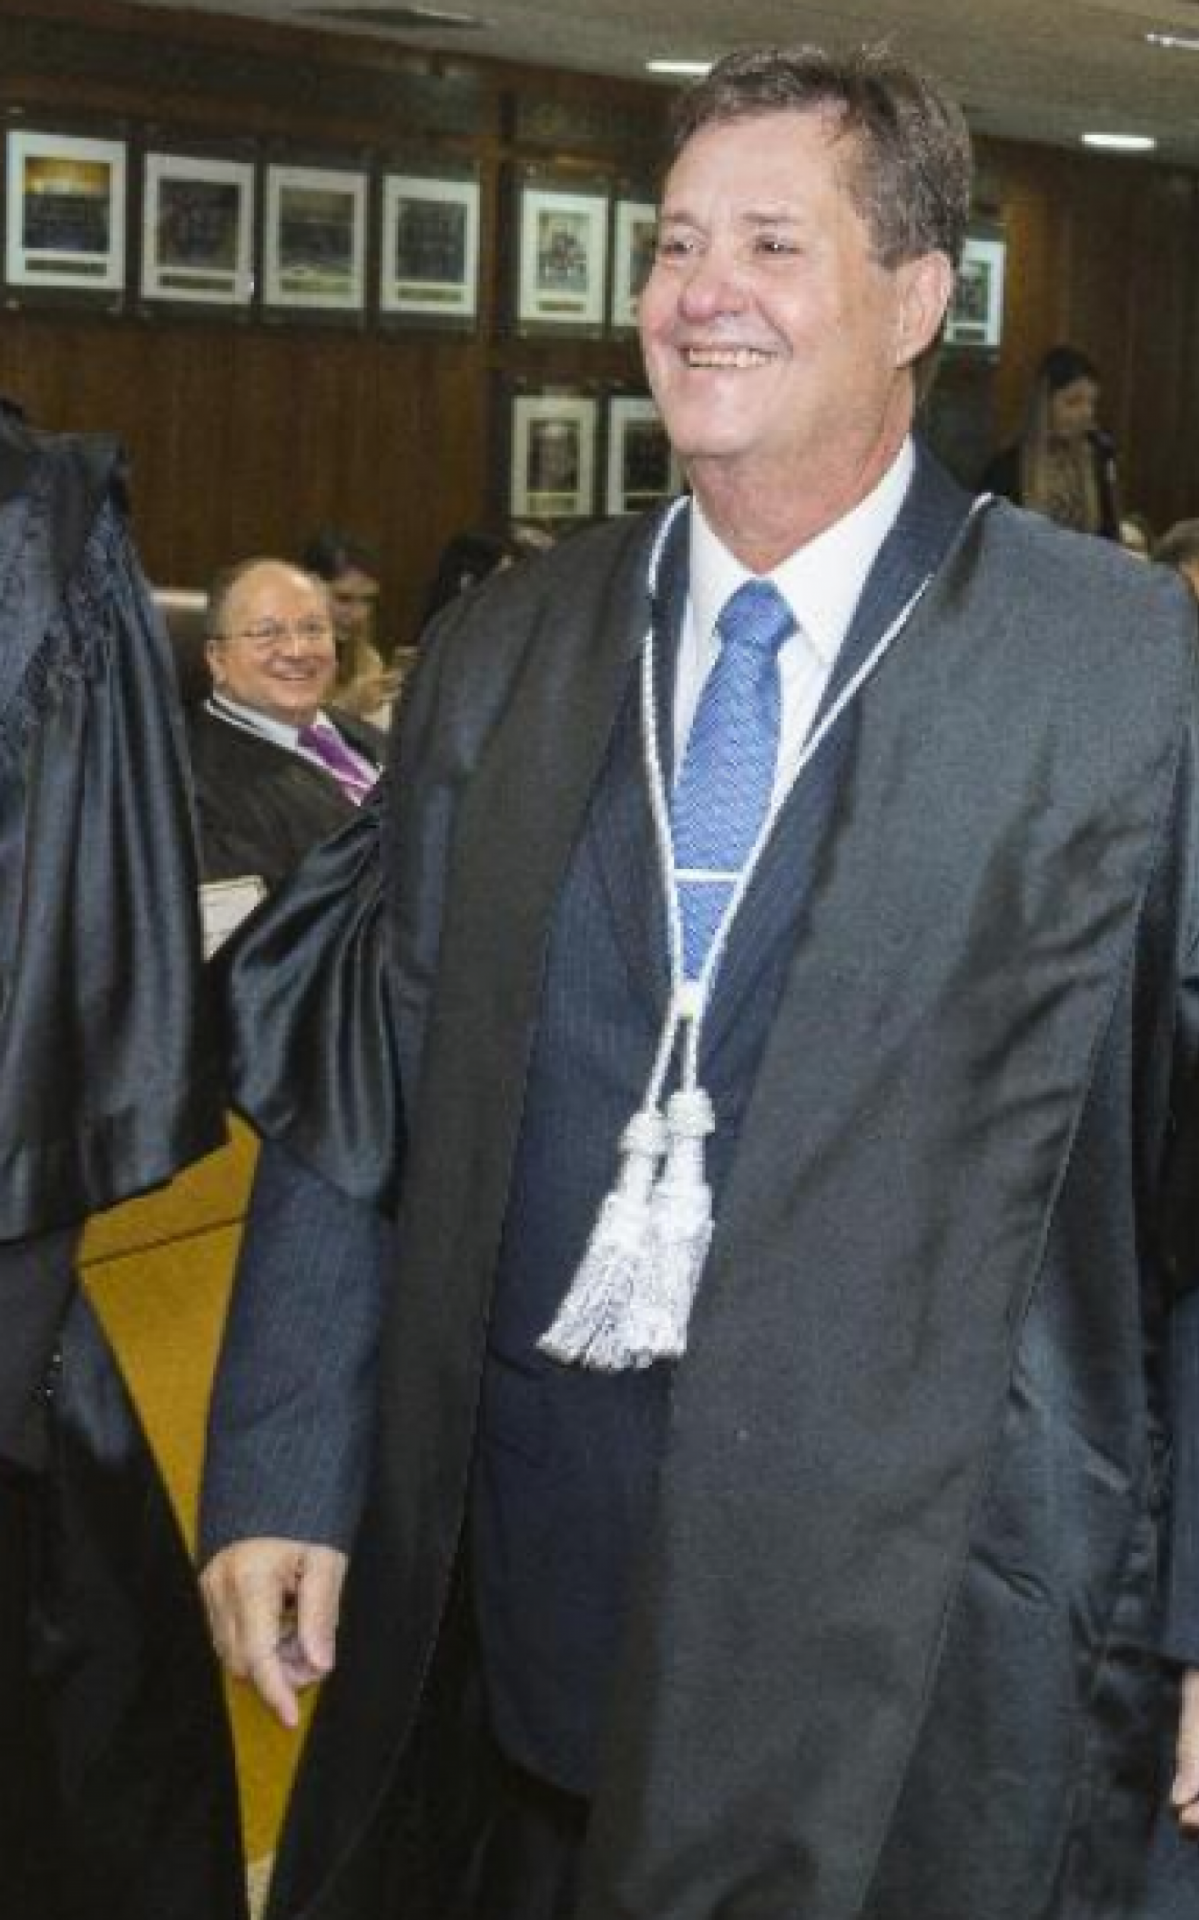 Homero deixou o caso em junho de 2018 quando foi promovido a procurador de Justiça - Divulgação / Ministério Público do Rio de Janeiro